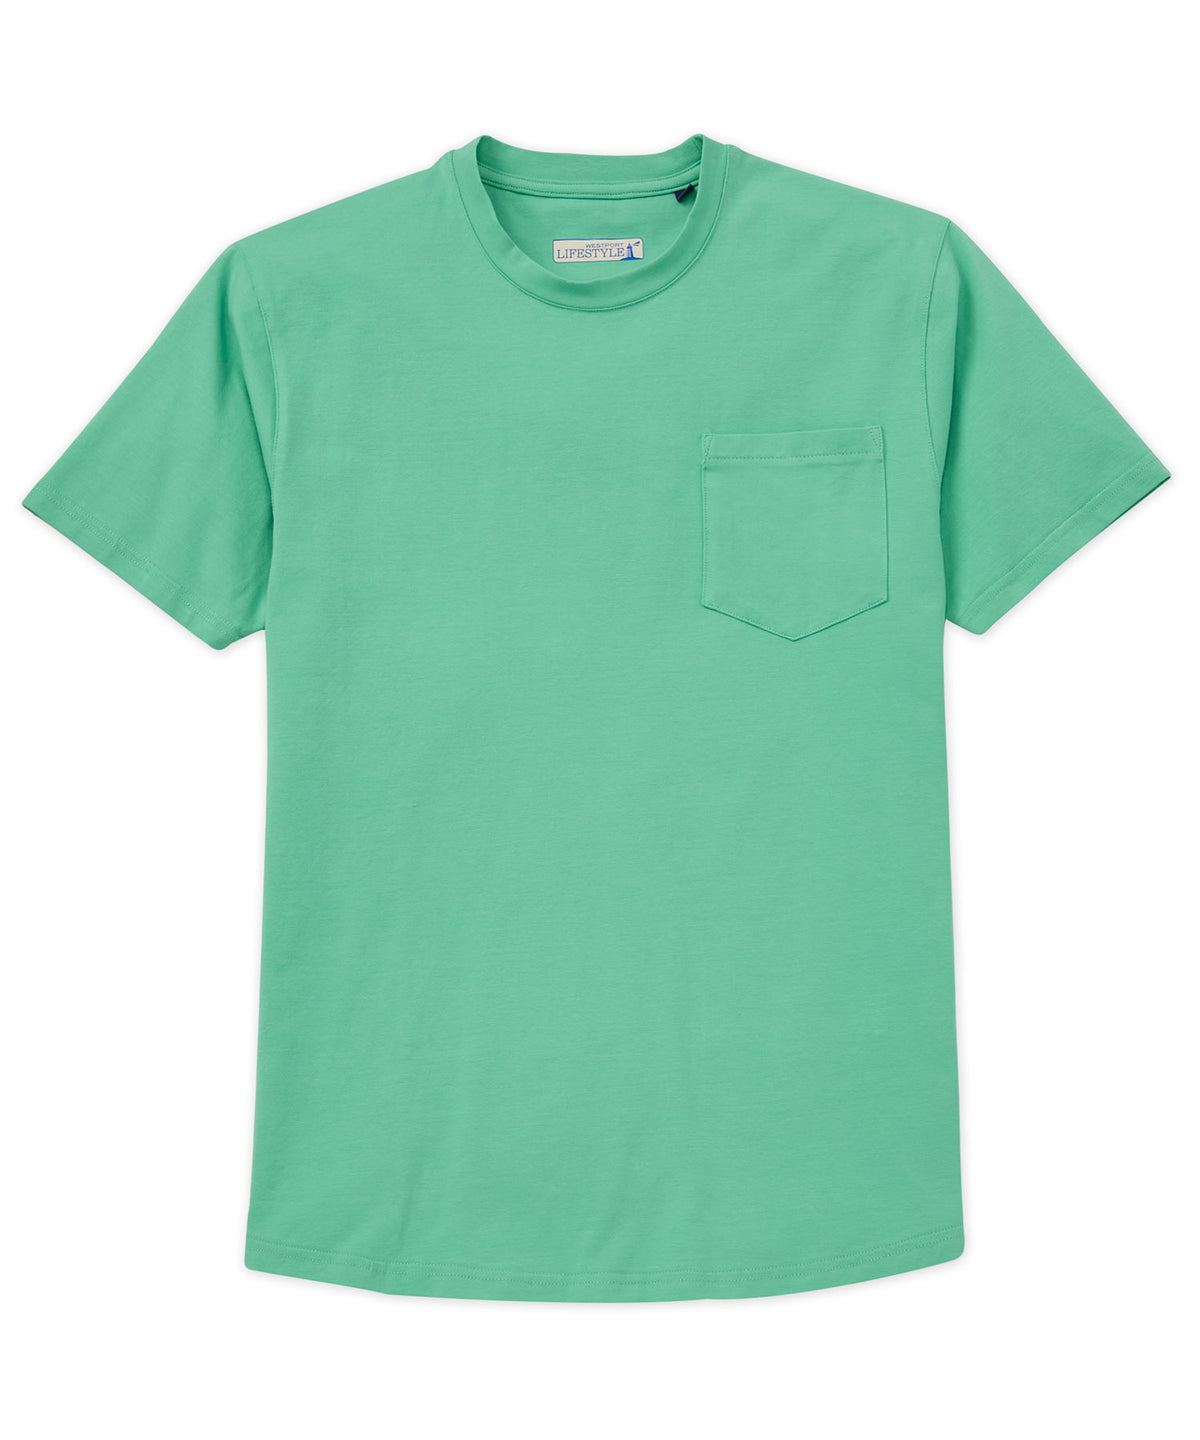 Westport Lifestyle Ridgefield Pocket T-Shirt, Men's Big & Tall